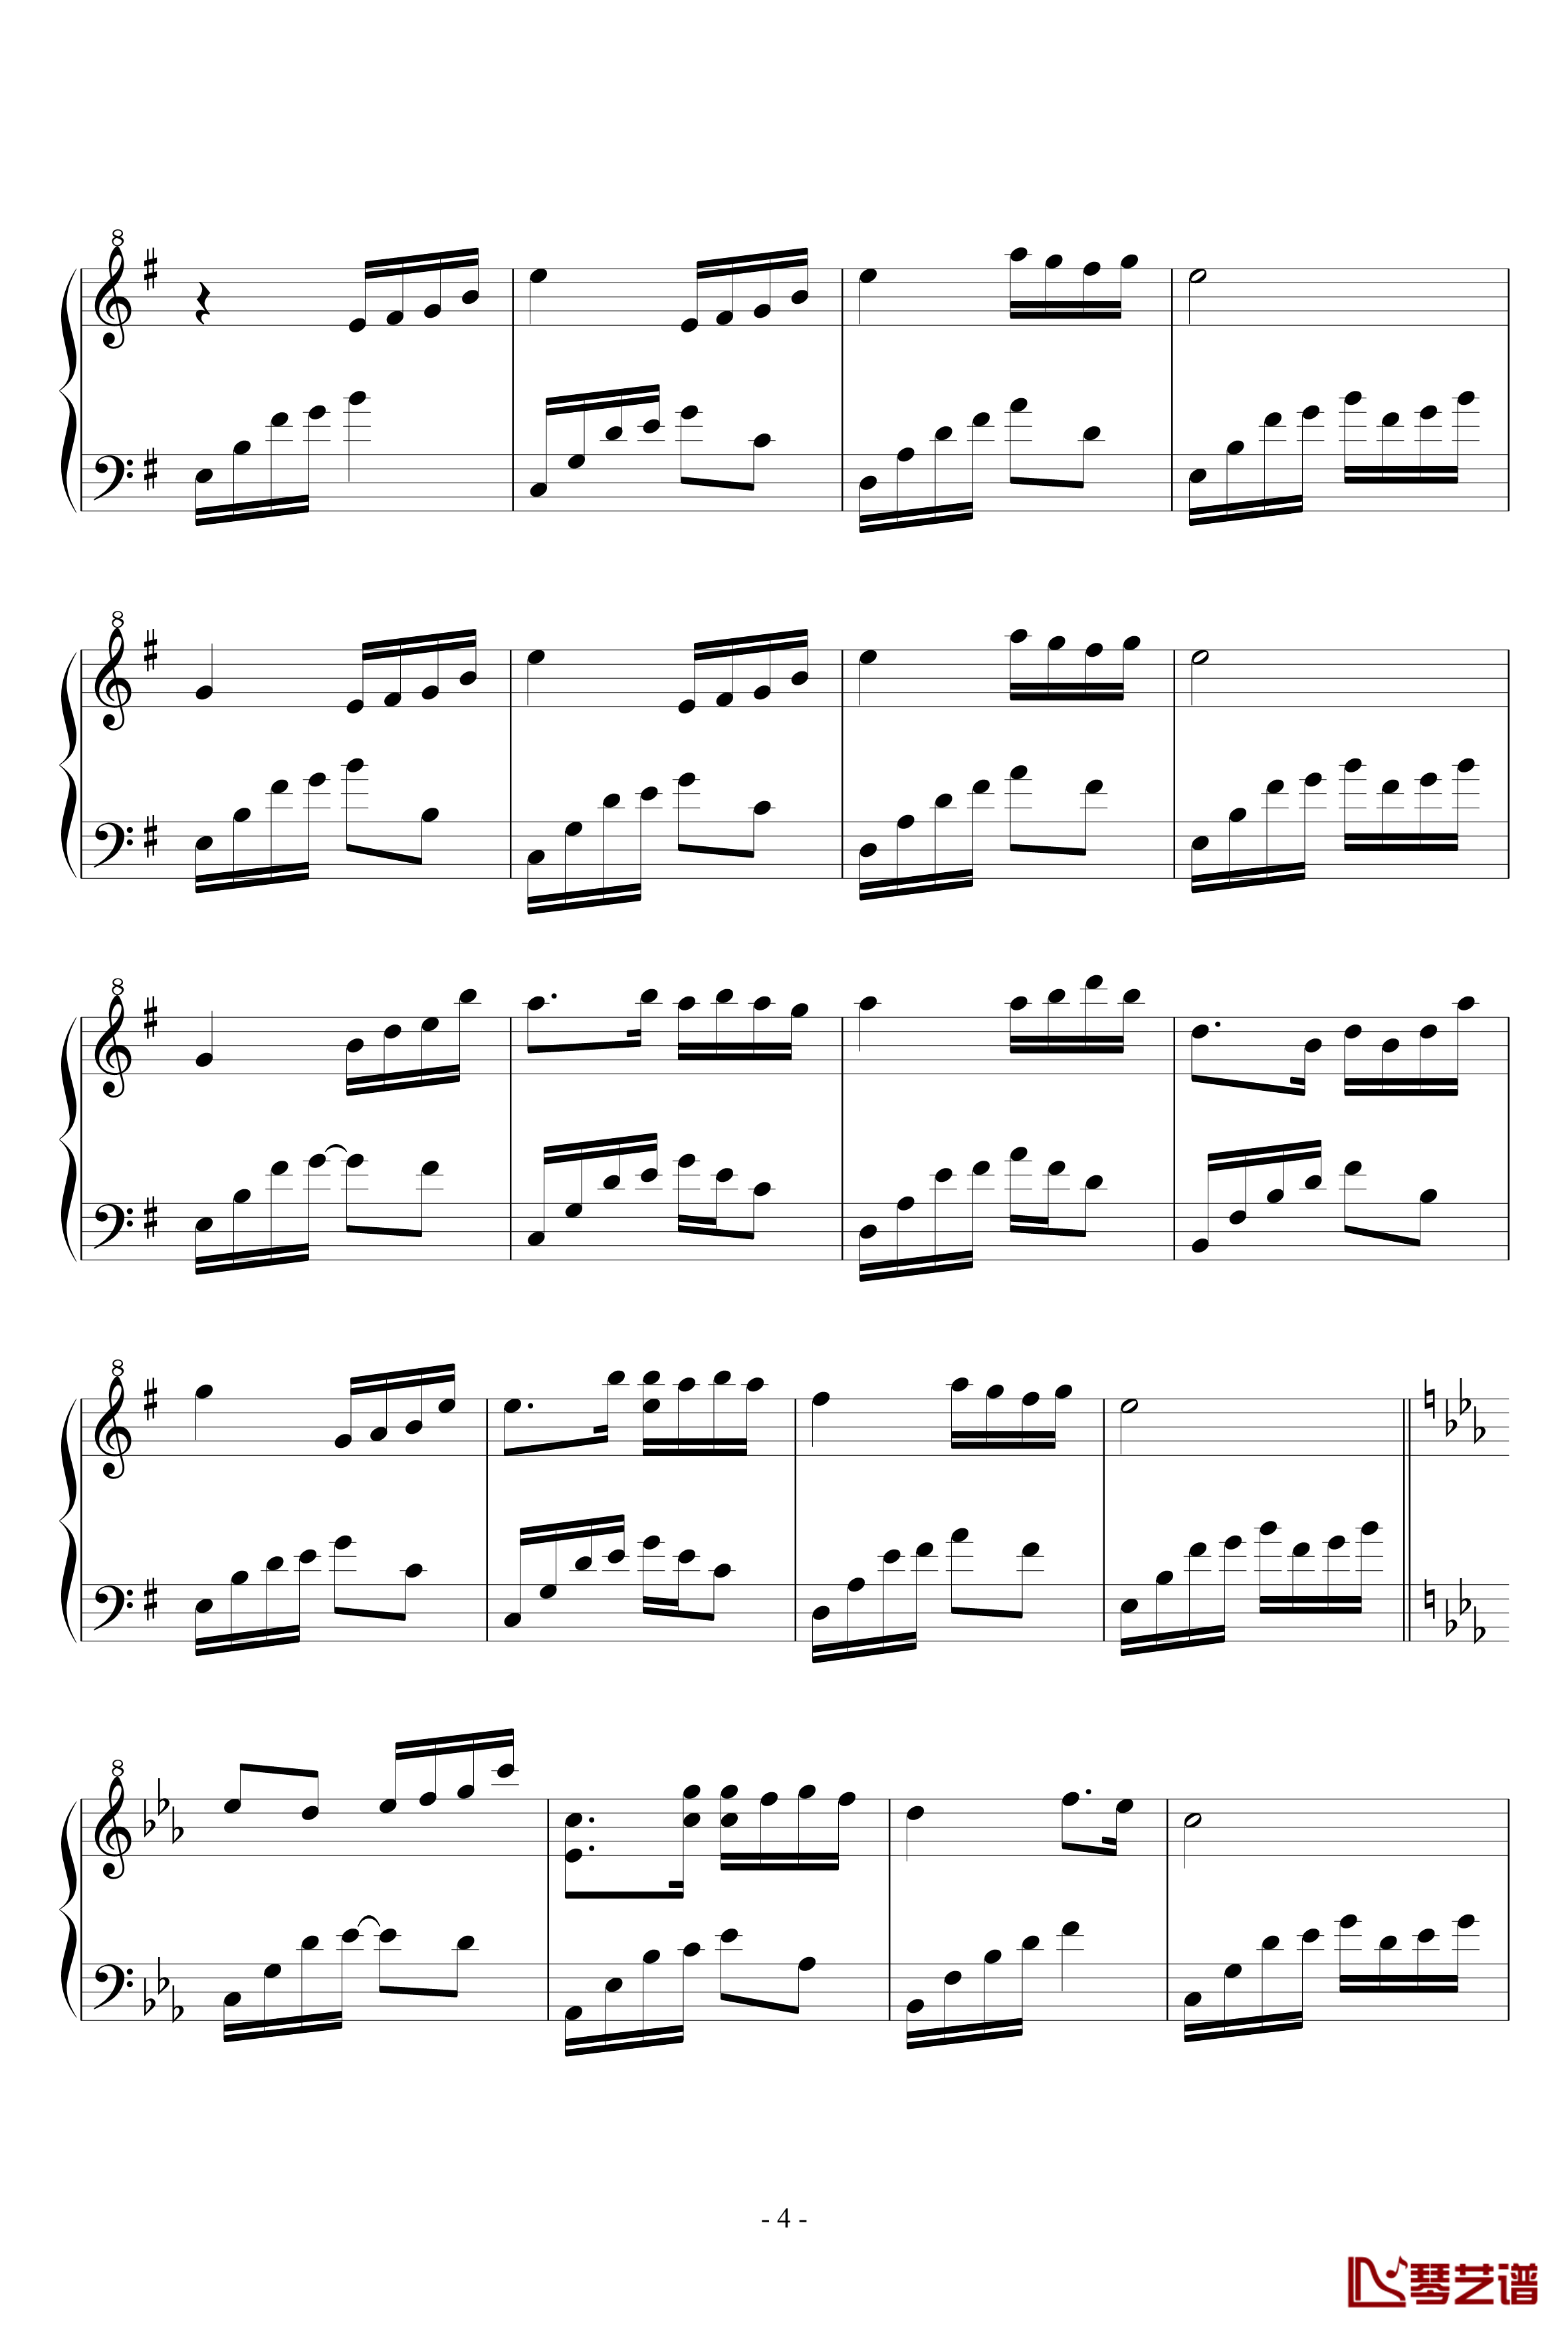 夜的钢琴曲钢琴谱-修改版-石进4